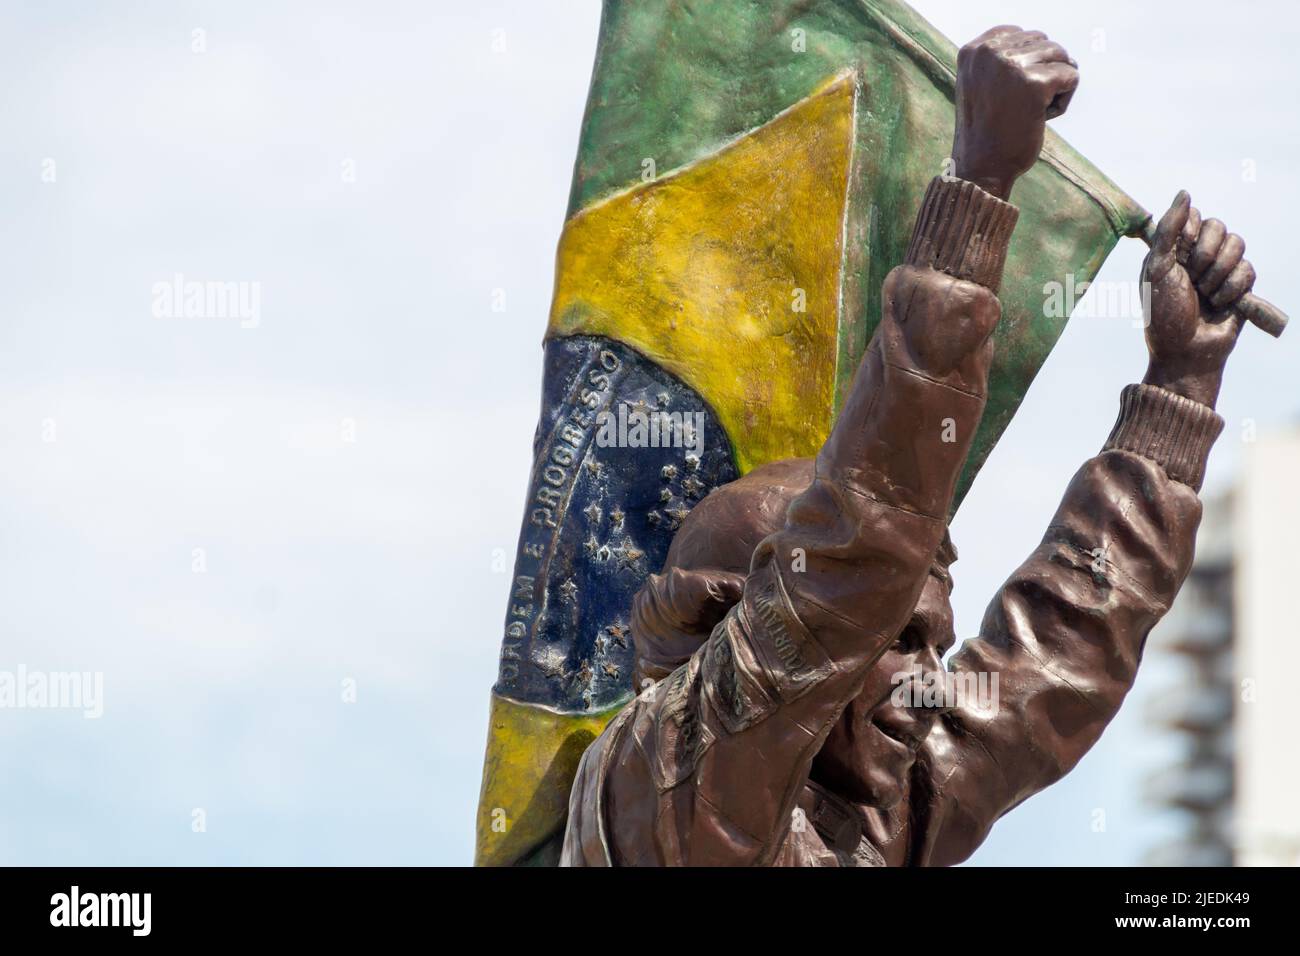 Statue des Piloten Ayrton Senna in Rio de Janeiro, Brasilien - 19. April 2020 : Statue des Piloten Ayrton Senna in der Stadt von Rio de Janeiro. Stockfoto